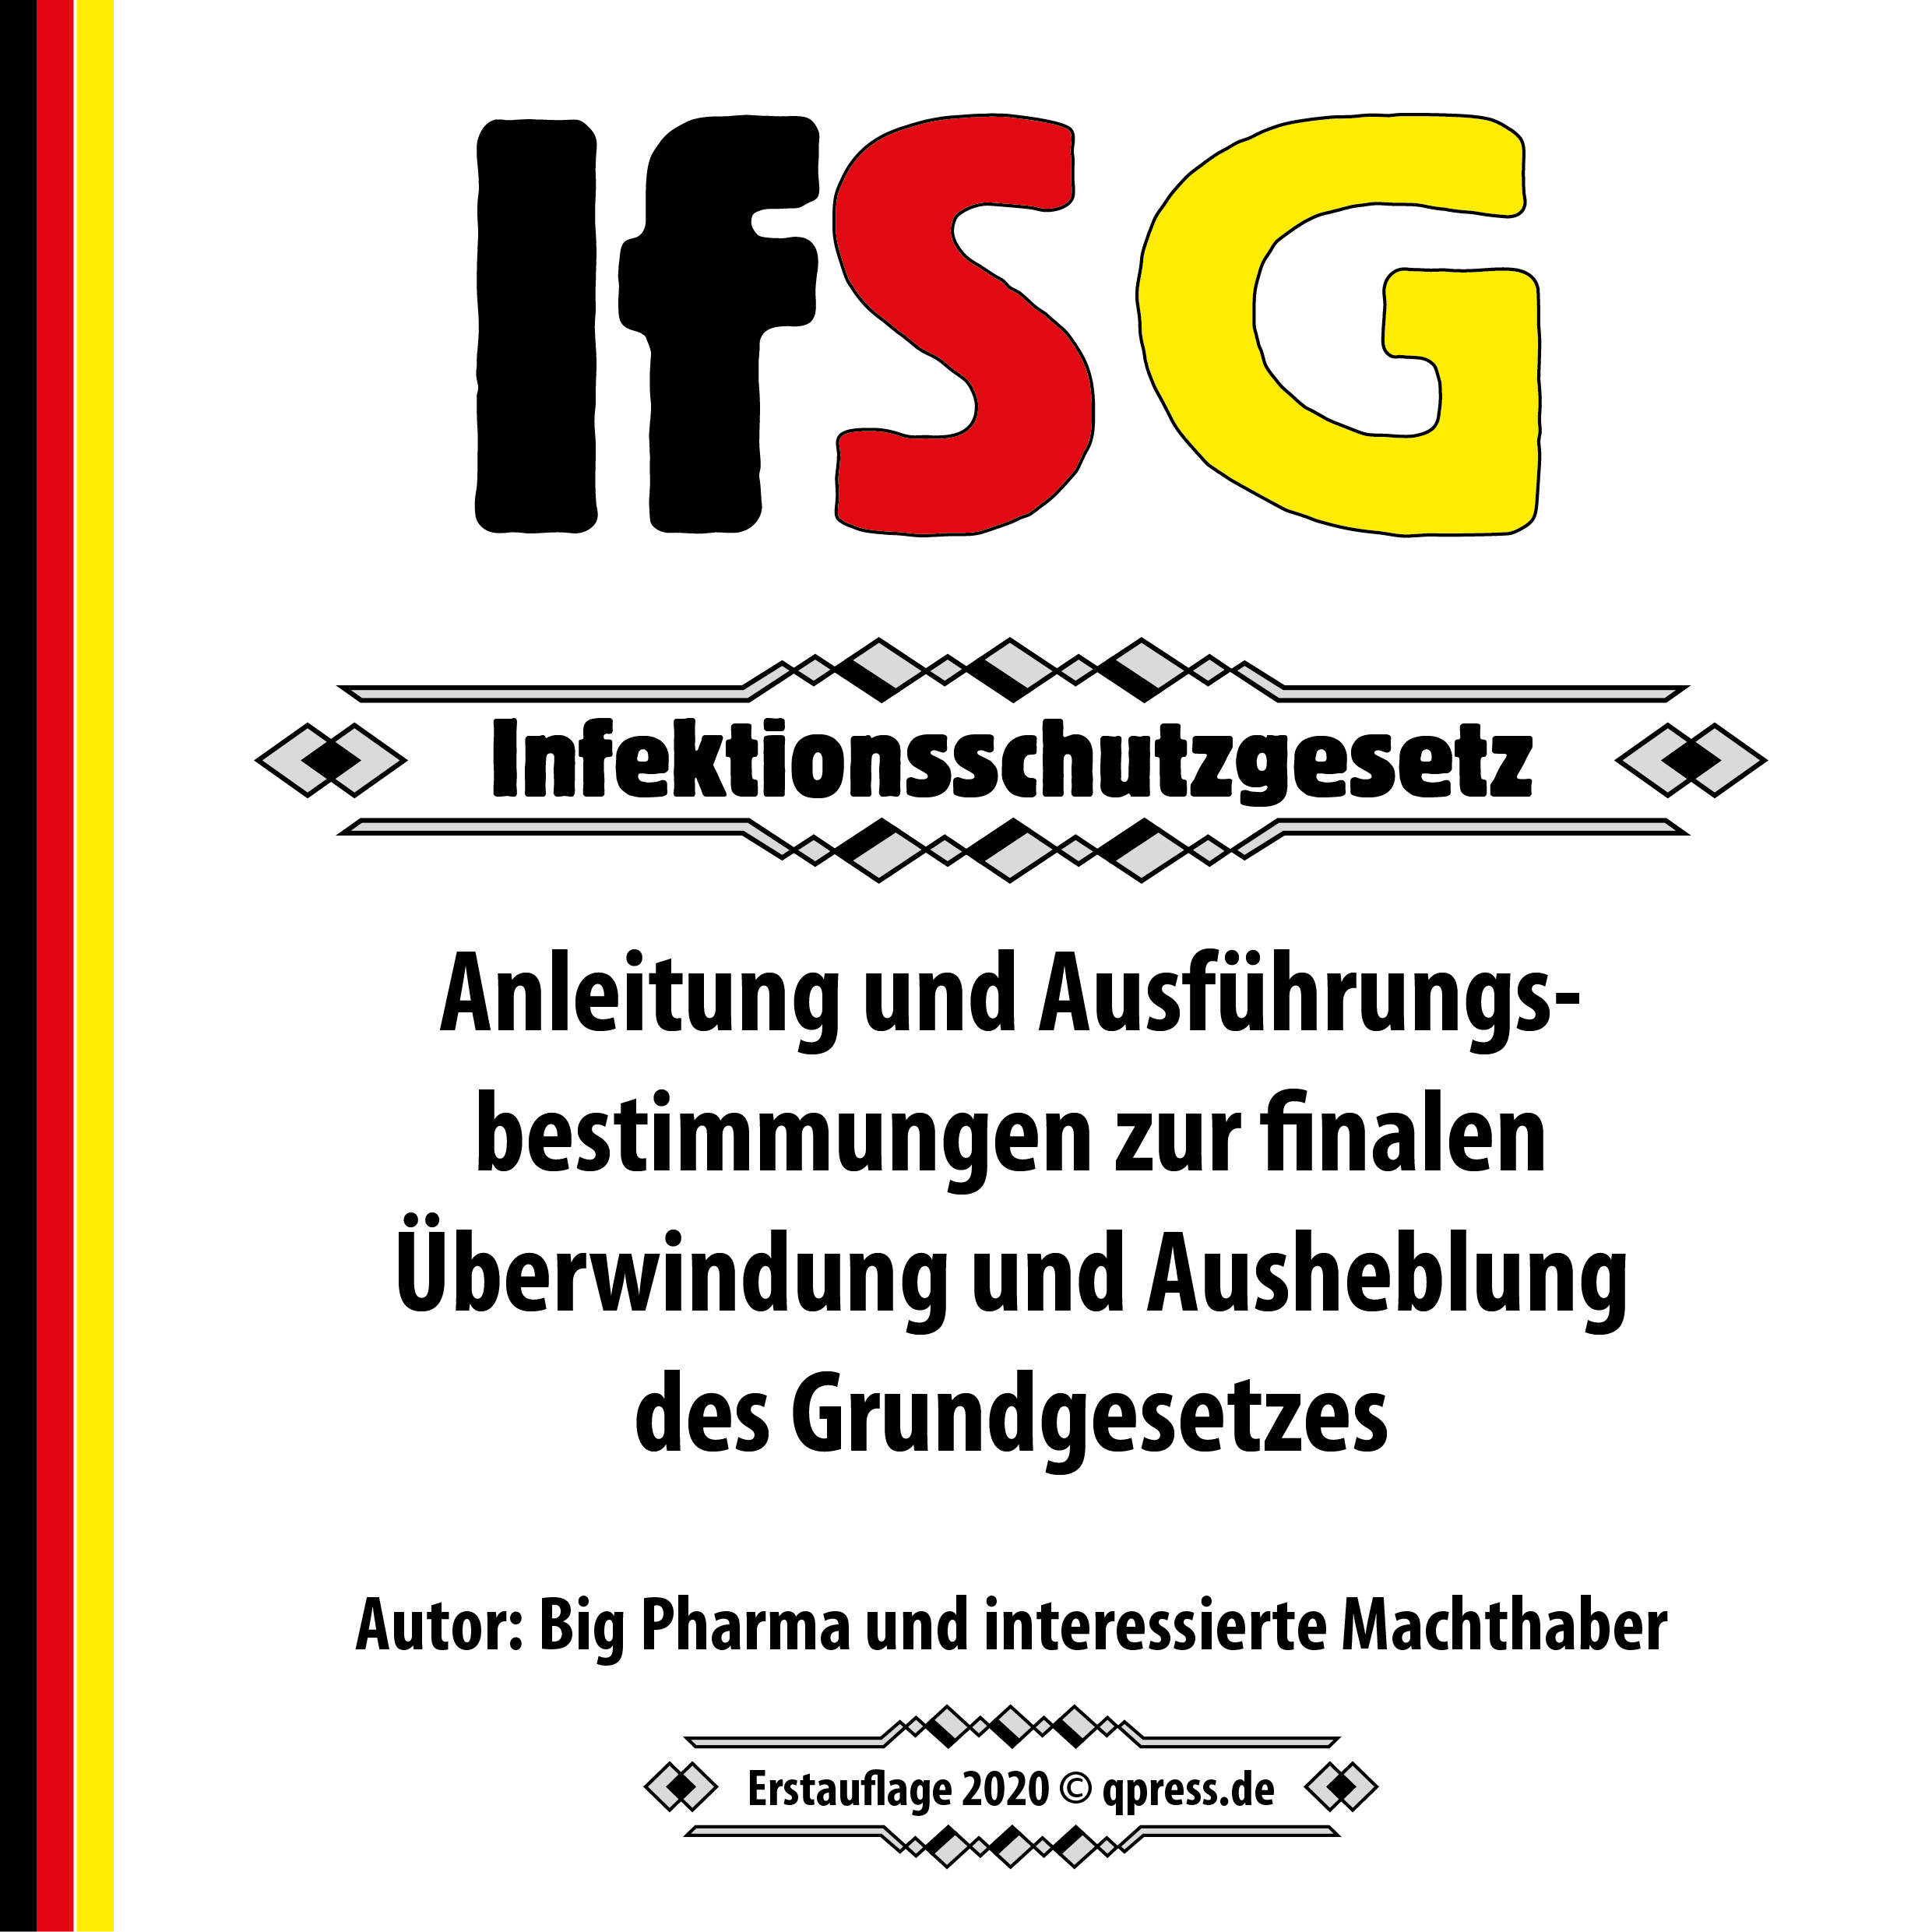 IfSG INfektionsschutzgesetz Anleitung Grundegsetz